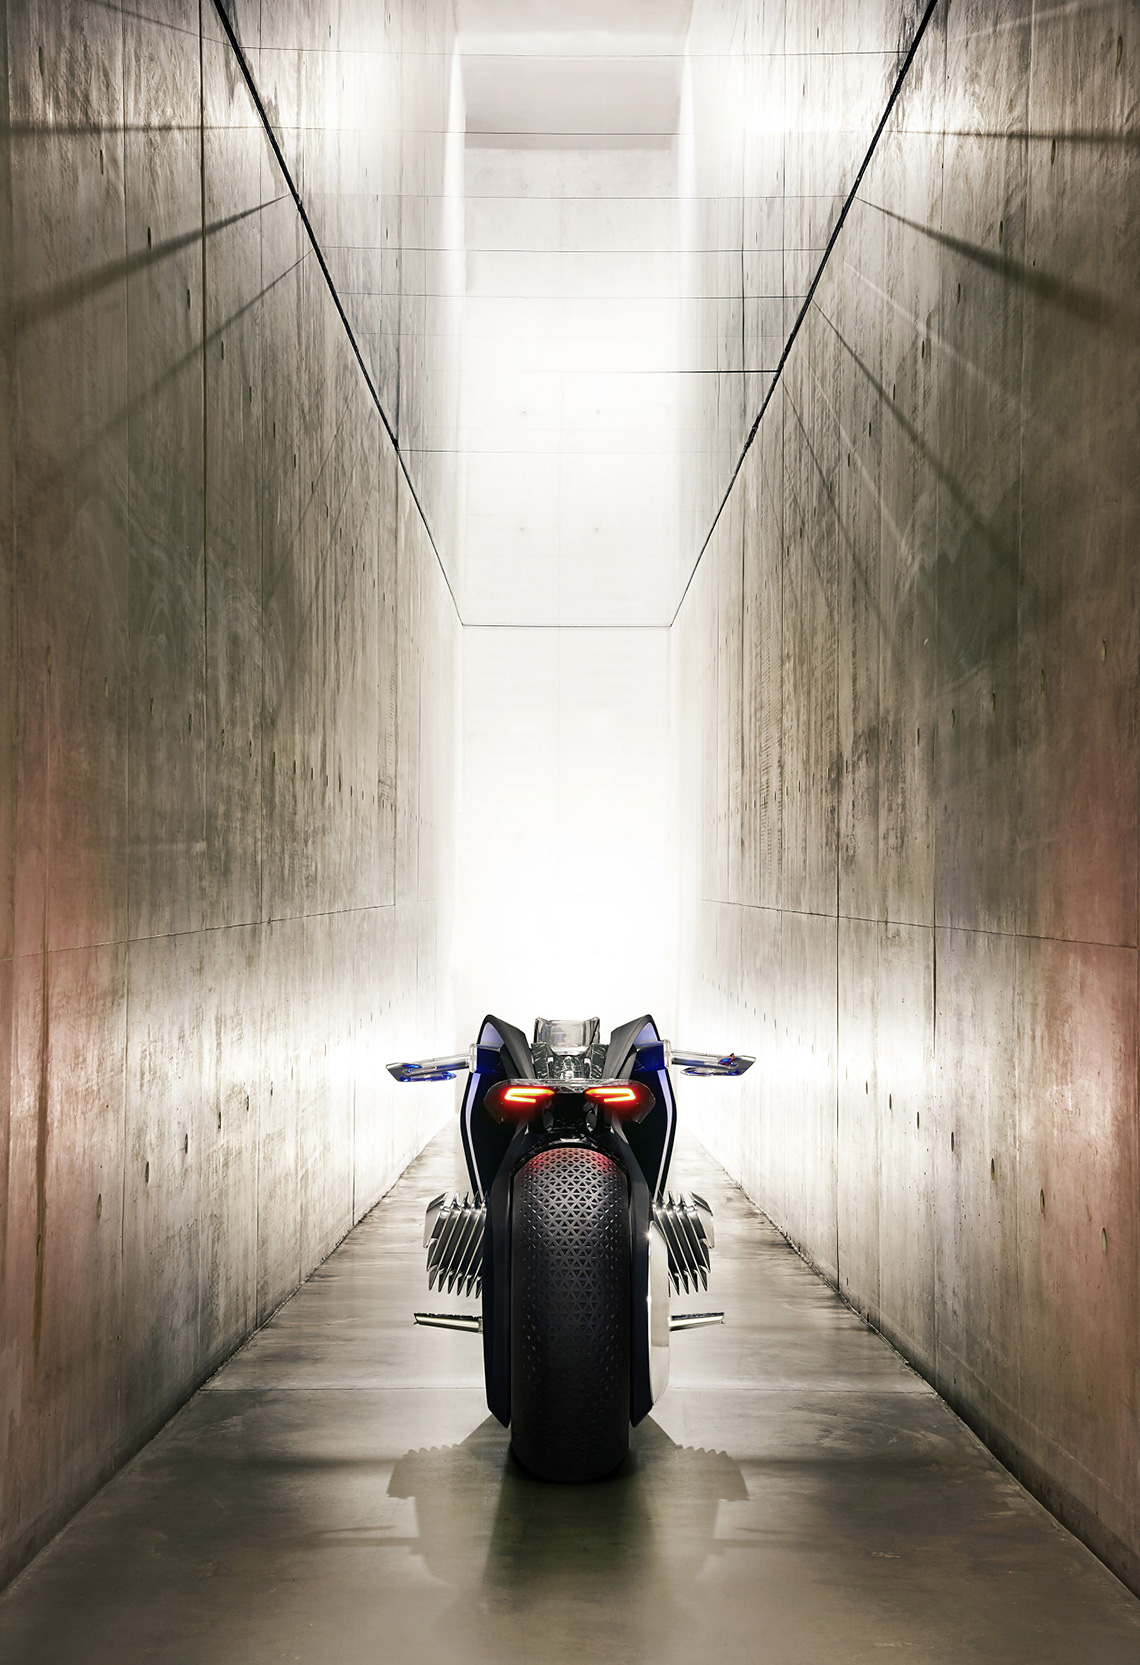 Konzept Motorrad BMW Motorrad Vision Next 100.